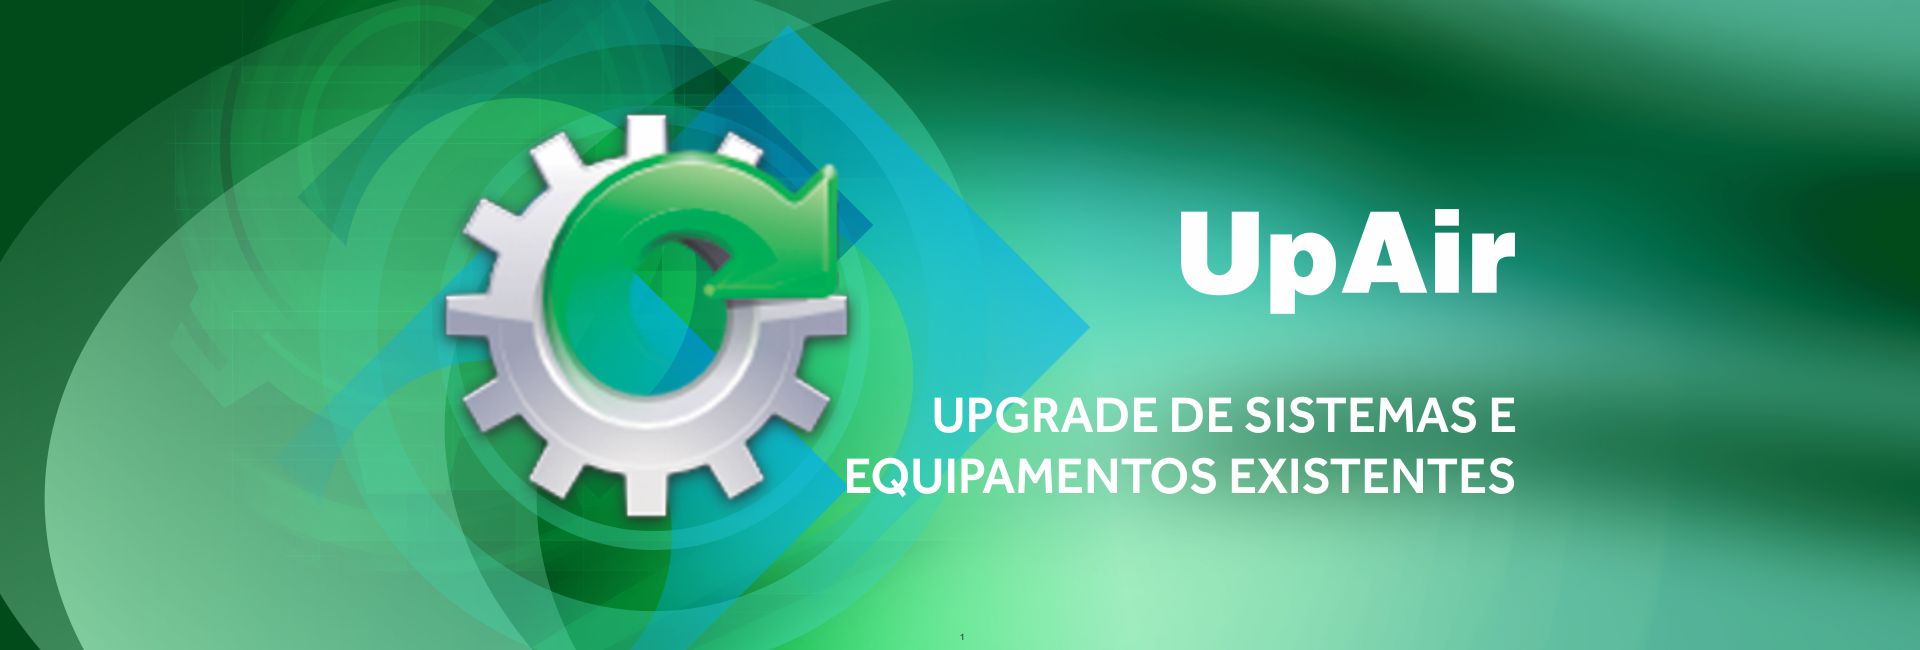 Upgrade de sistemas e equipamentos existentes UpAir